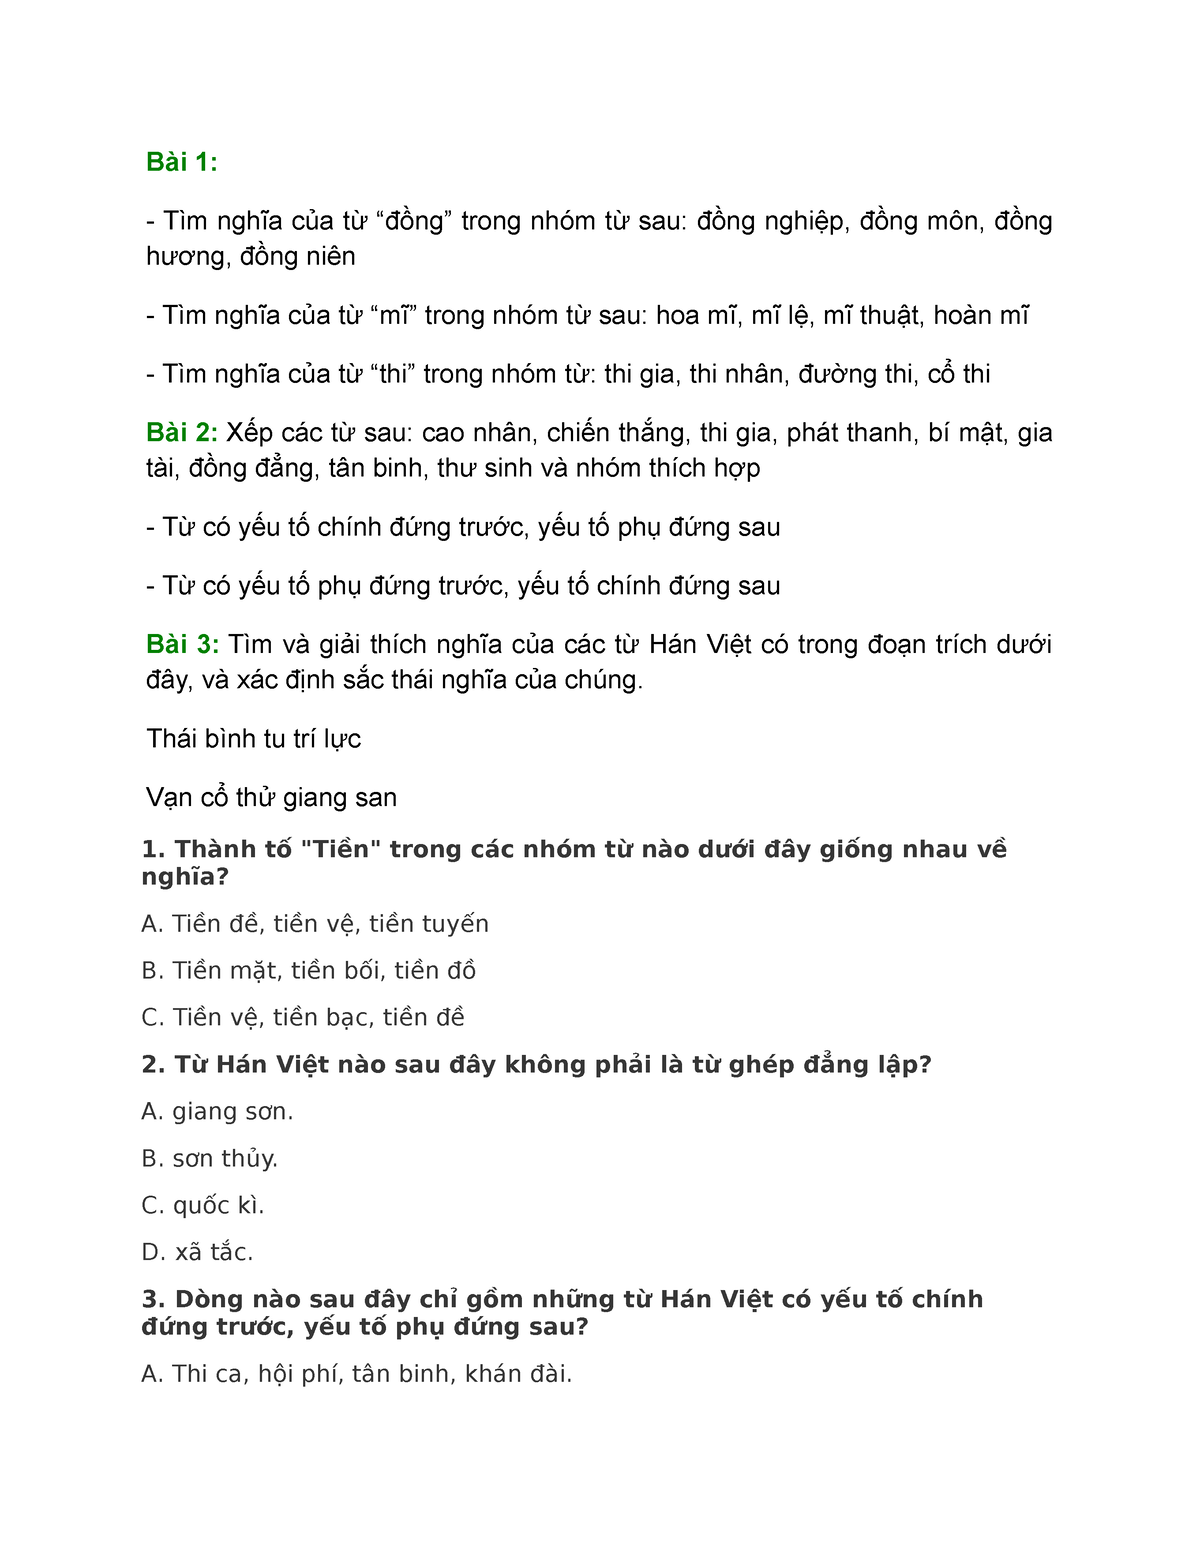 Tại sao học sinh lớp 7 cần phải làm bài tập từ Hán Việt?
